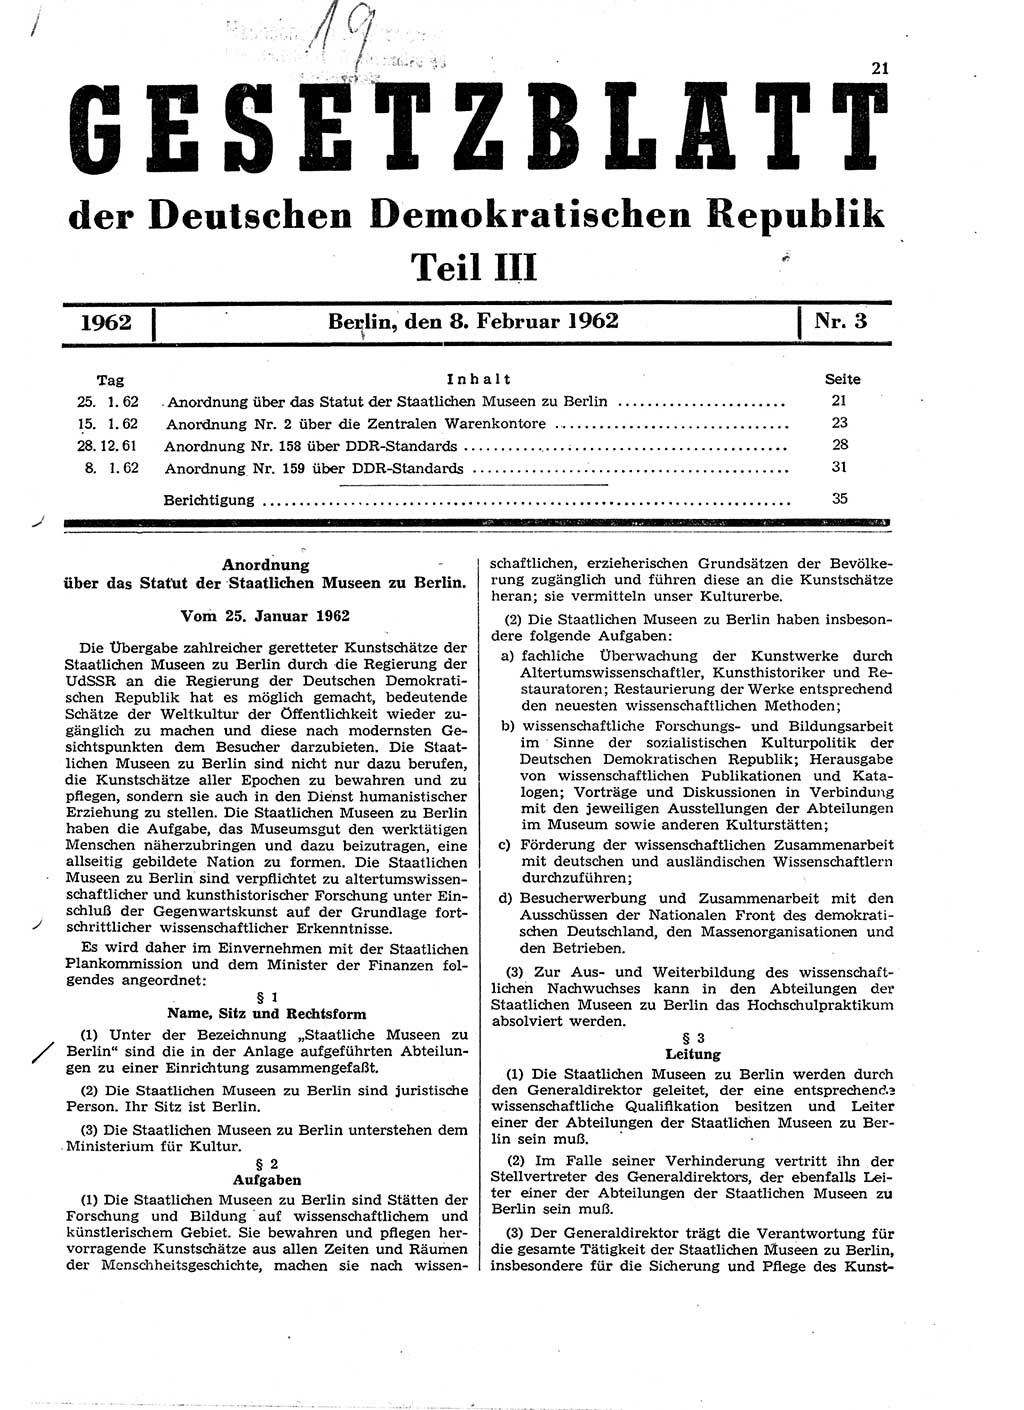 Gesetzblatt (GBl.) der Deutschen Demokratischen Republik (DDR) Teil â… â… â… 1962, Seite 21 (GBl. DDR â… â… â… 1962, S. 21)